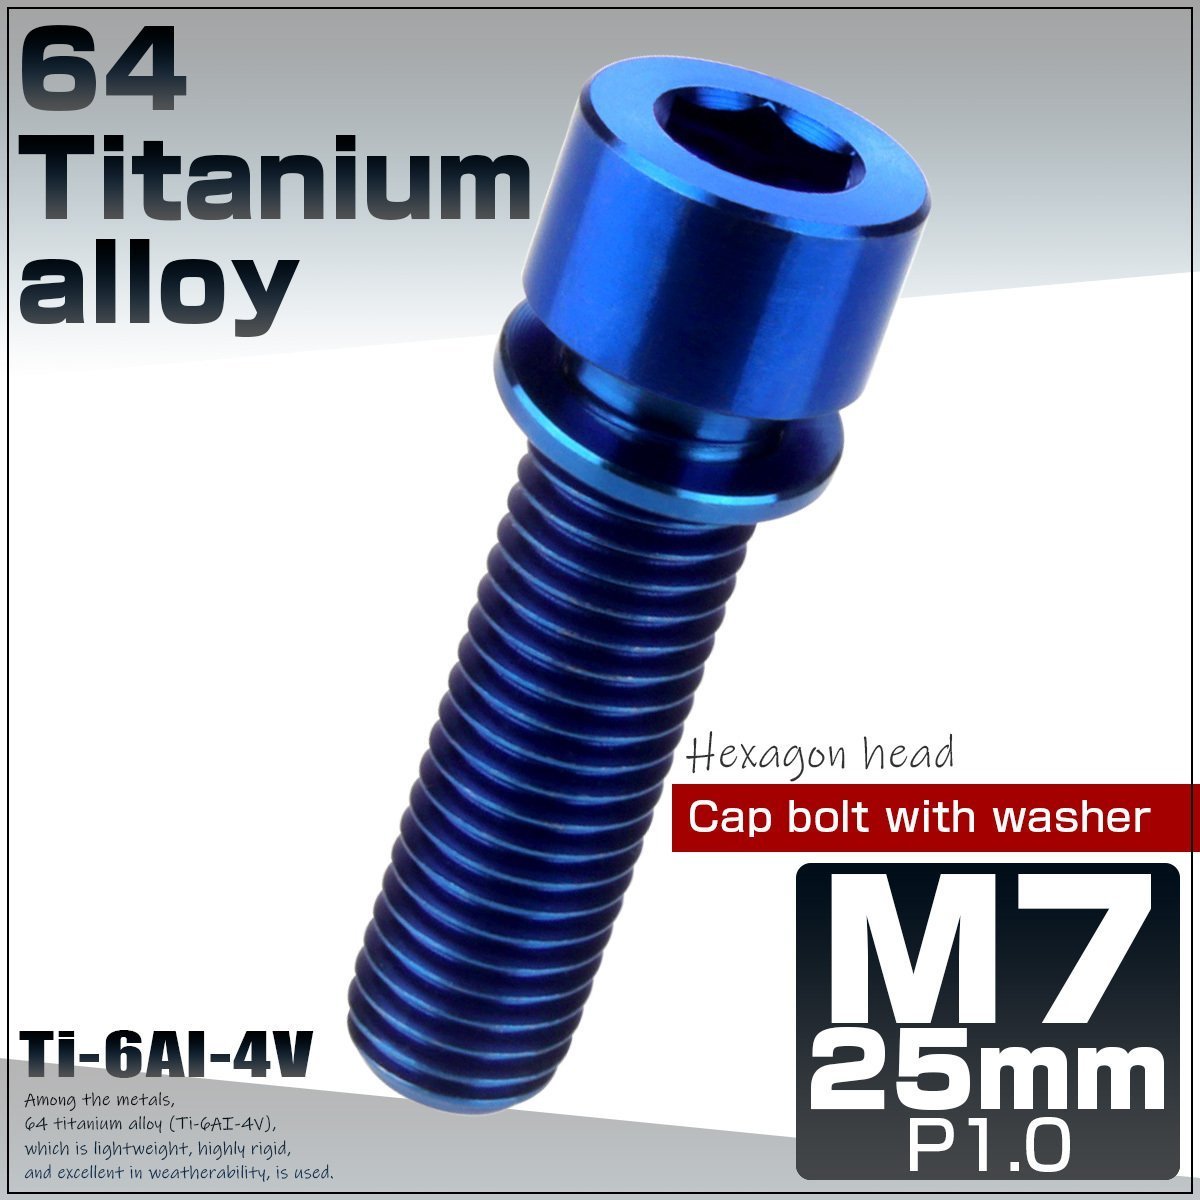 M7×25mm ブルー 64チタン製 キャップボルト ワッシャー付き ステムボルト チタンボルト JA722_画像1